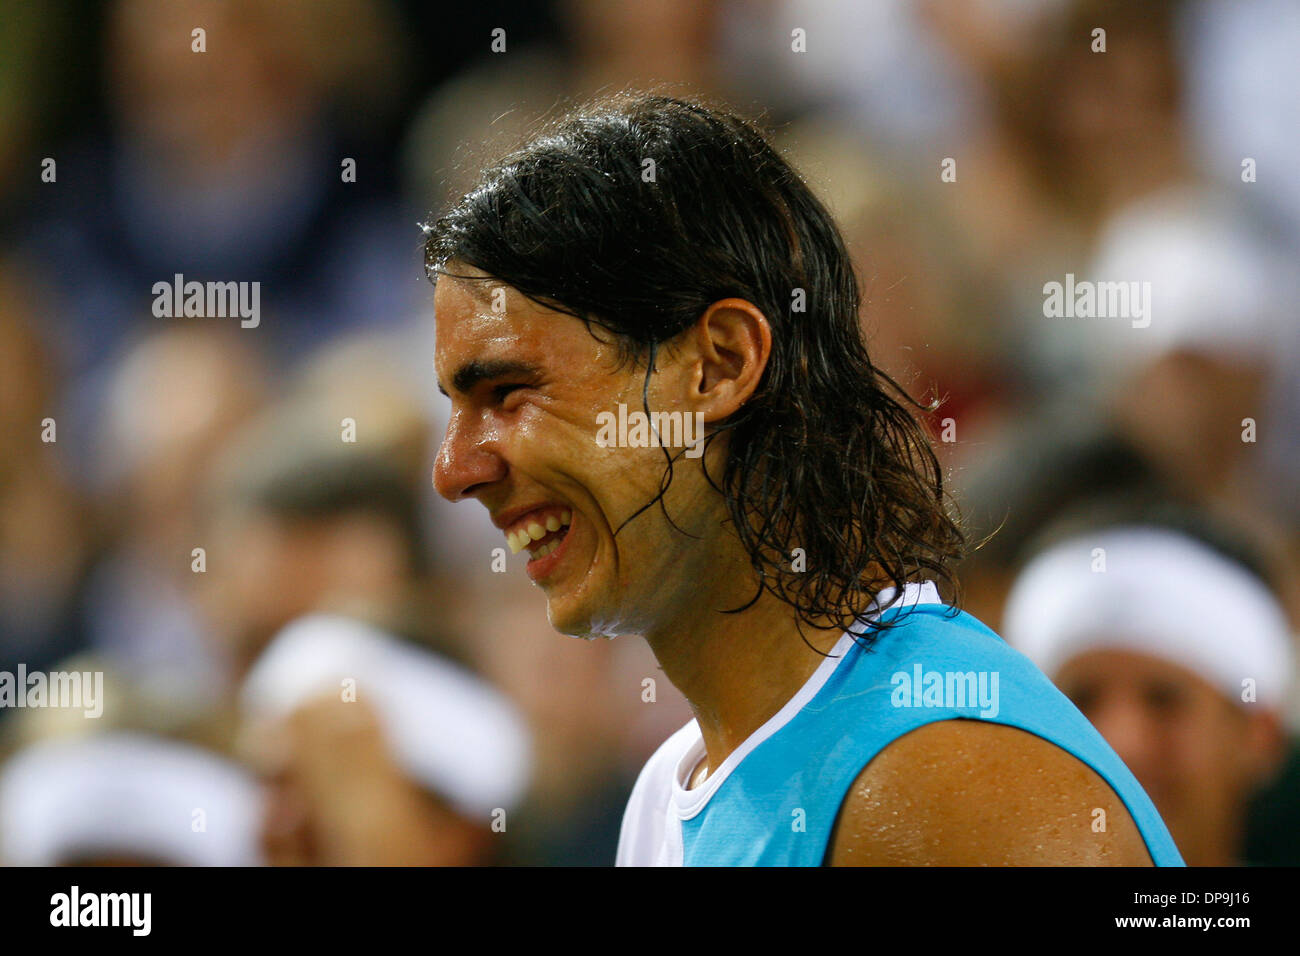 L'Espagne est le joueur de tennis Rafa Nadal vu lors d'un match dans l'île de Majorque, Espagne. Banque D'Images